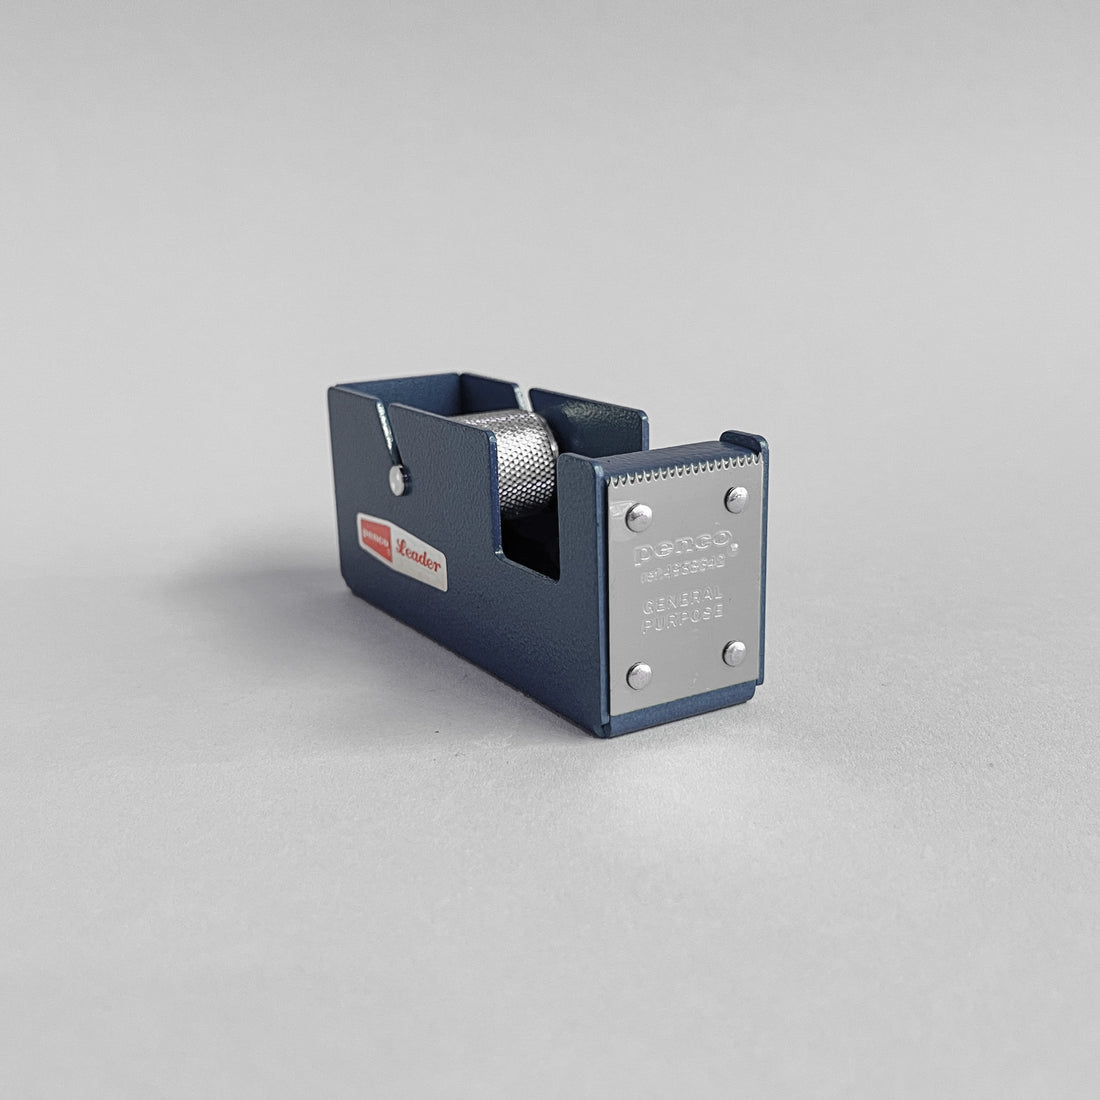 Penco Leader Small Tape Dispenser